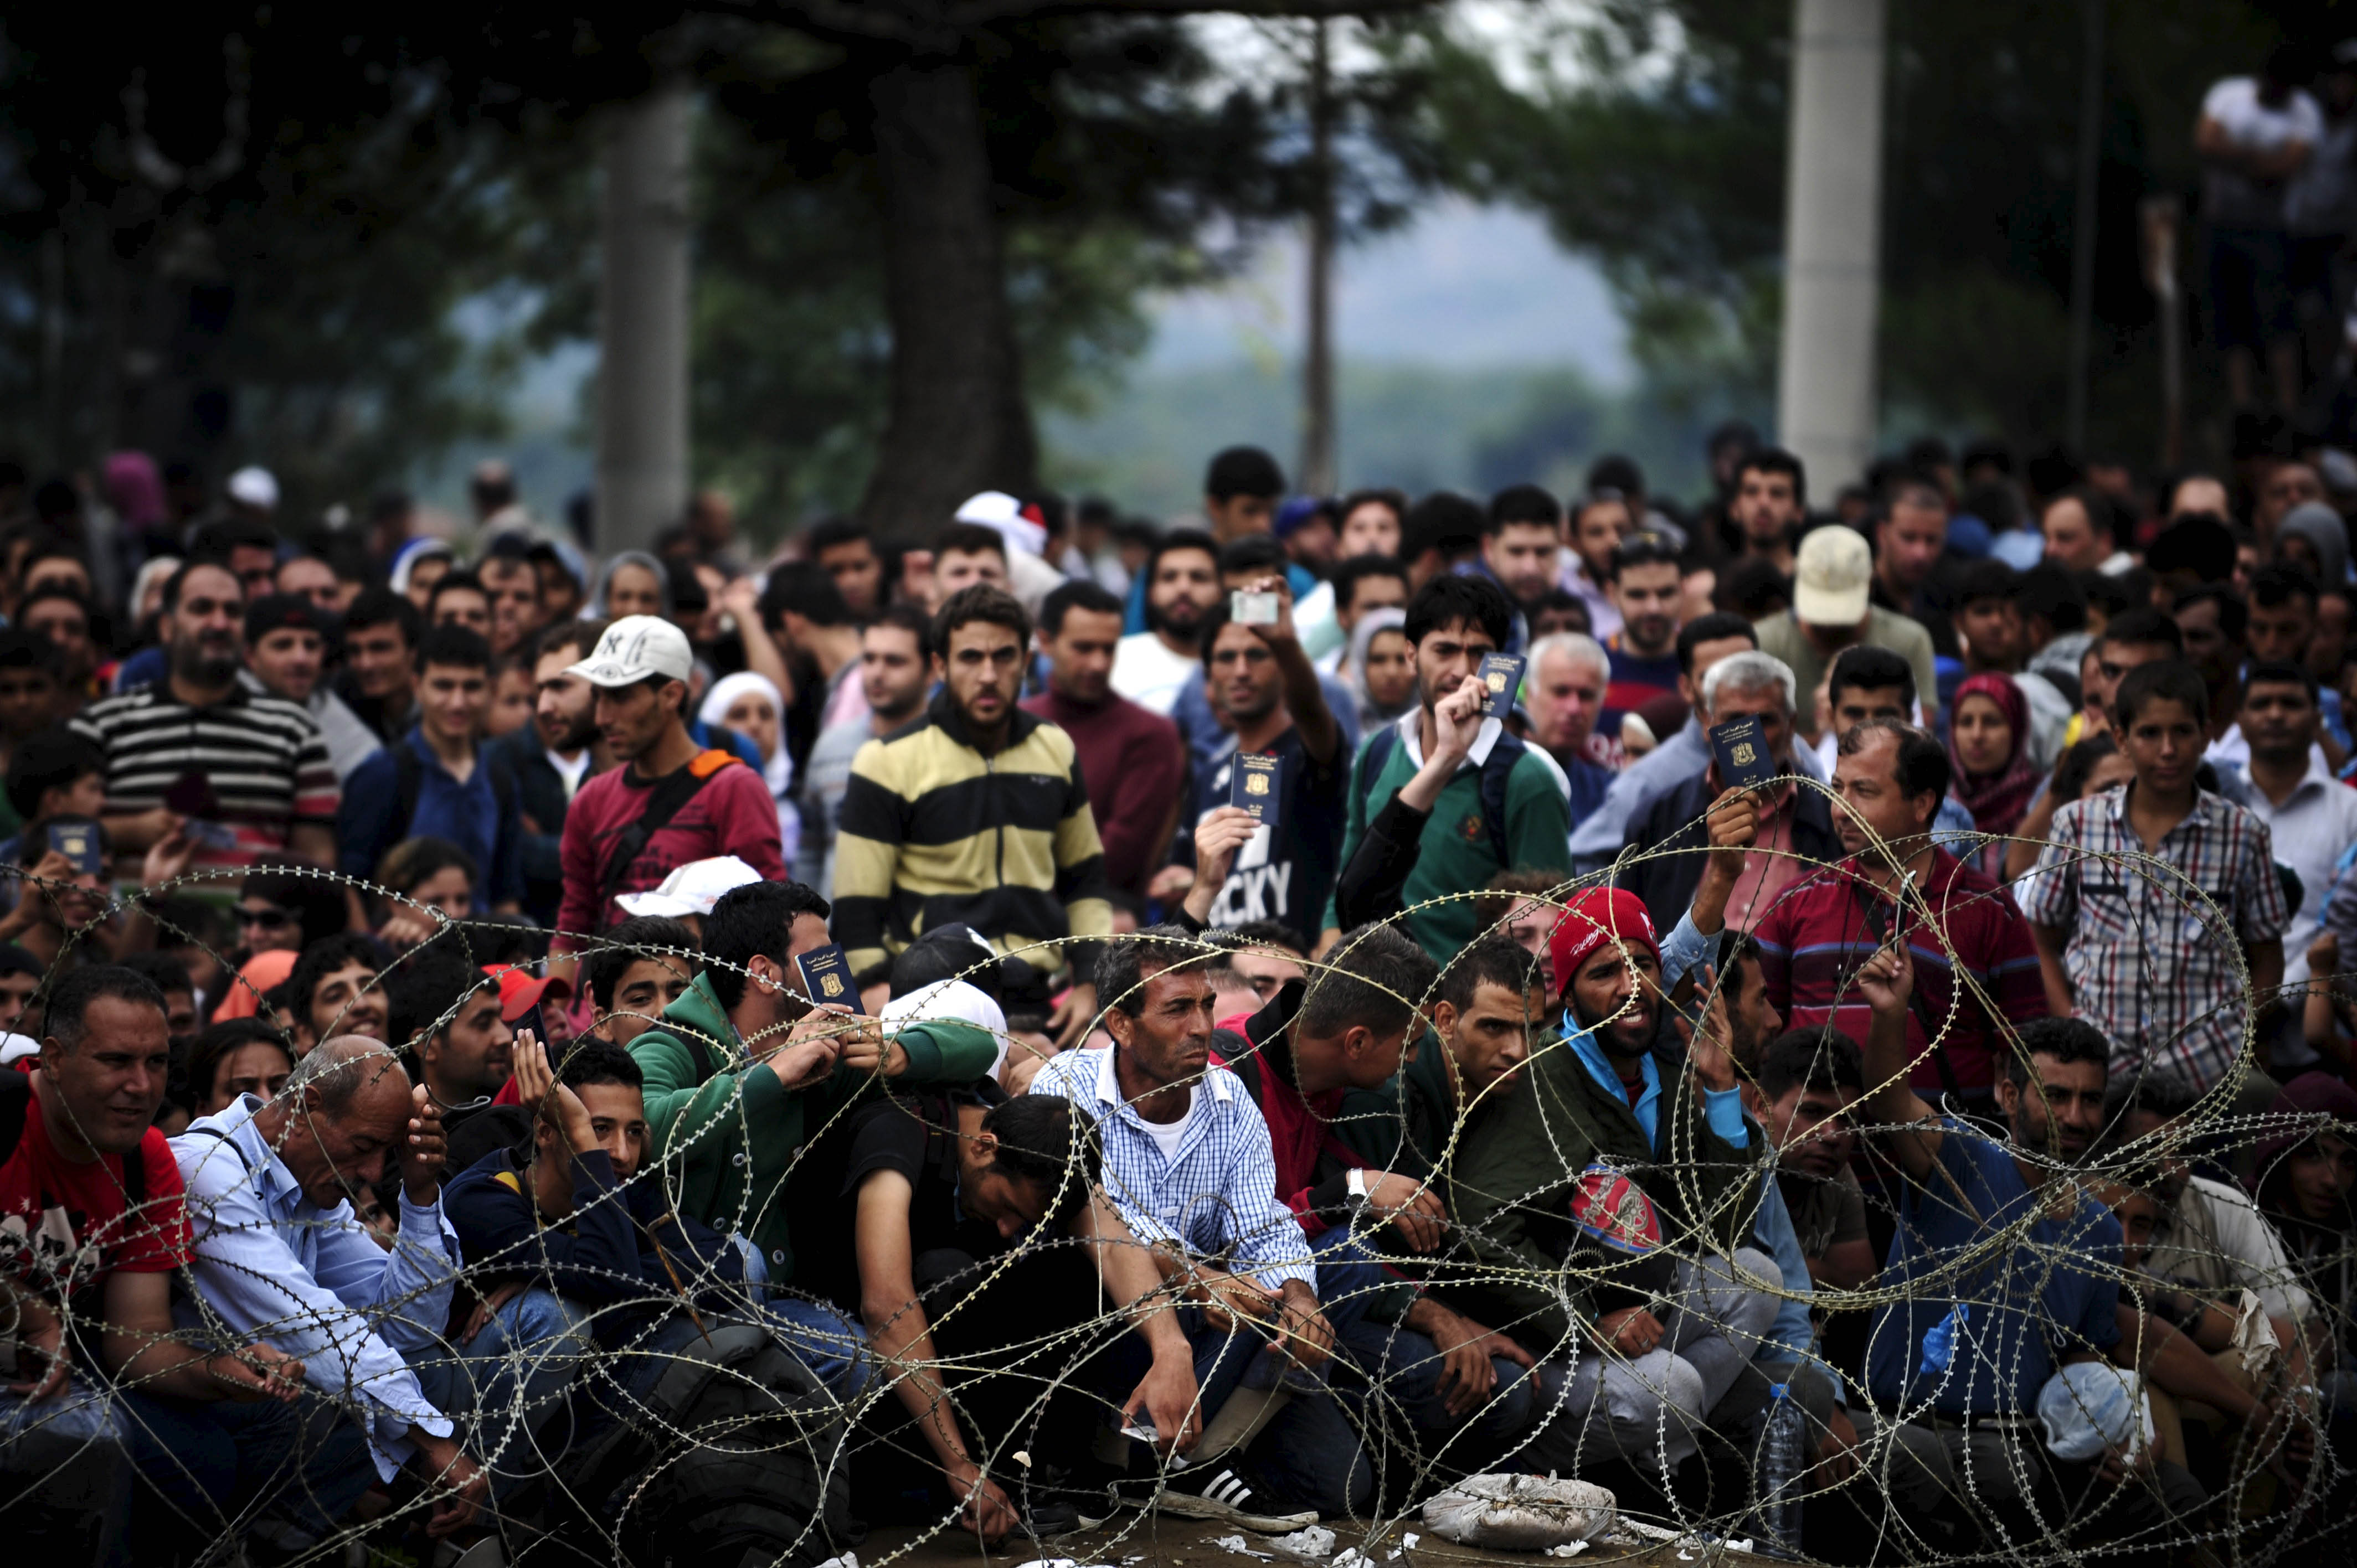  مخيم موريا اليوناني للاجئين السوريين في حالة طوارئ 